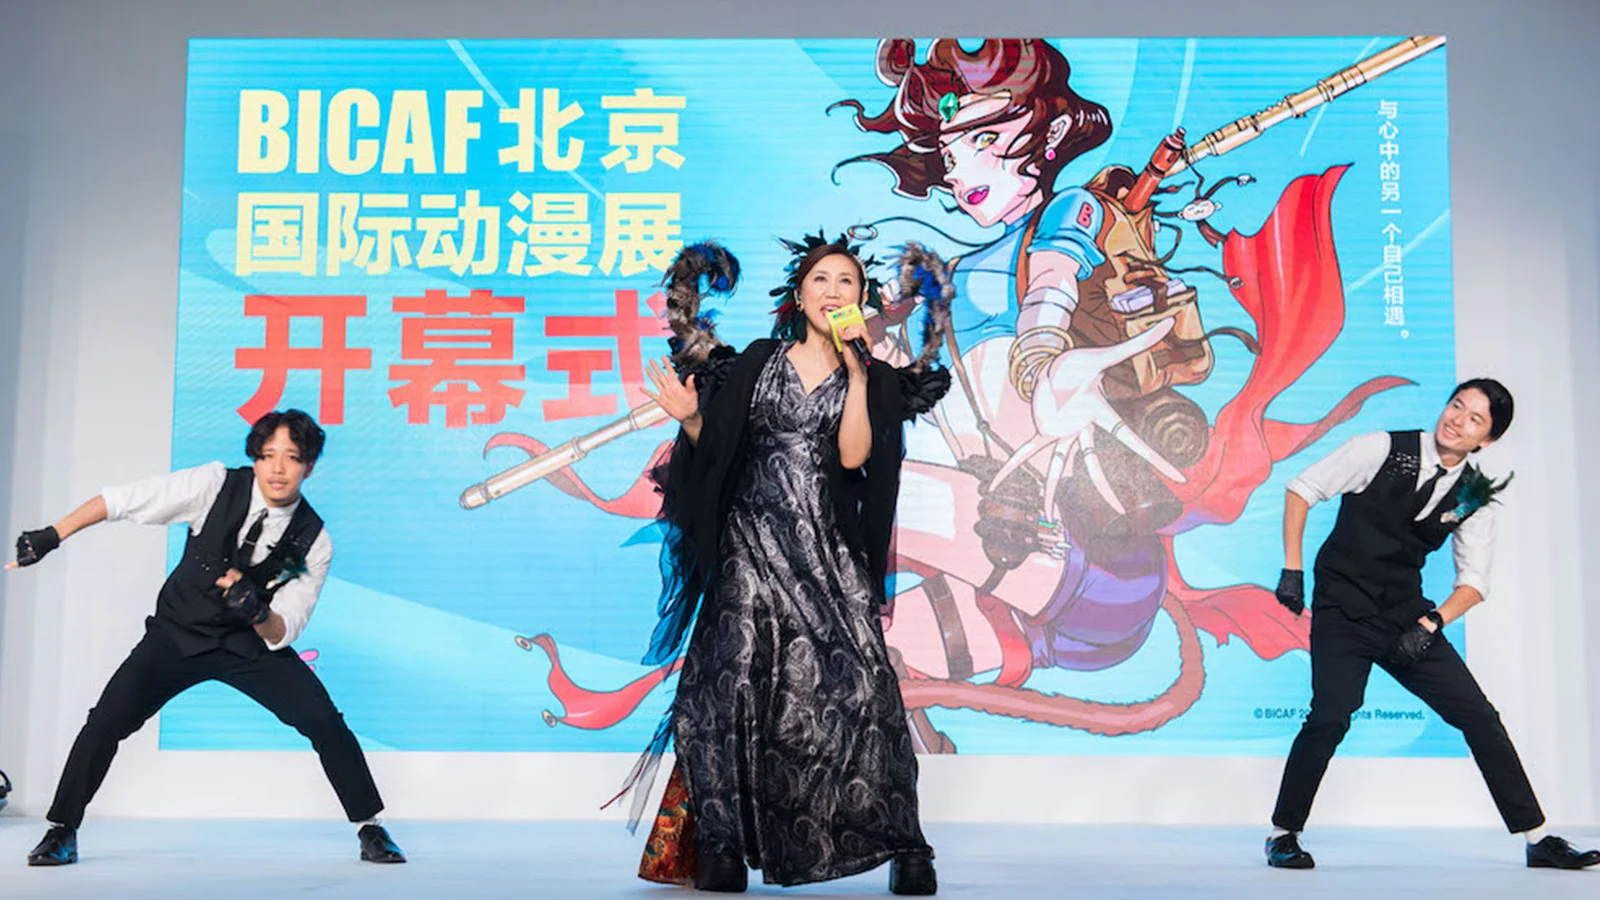 高桥洋子现身开幕式，BICAF北京国际动漫展2018于今日正式开展